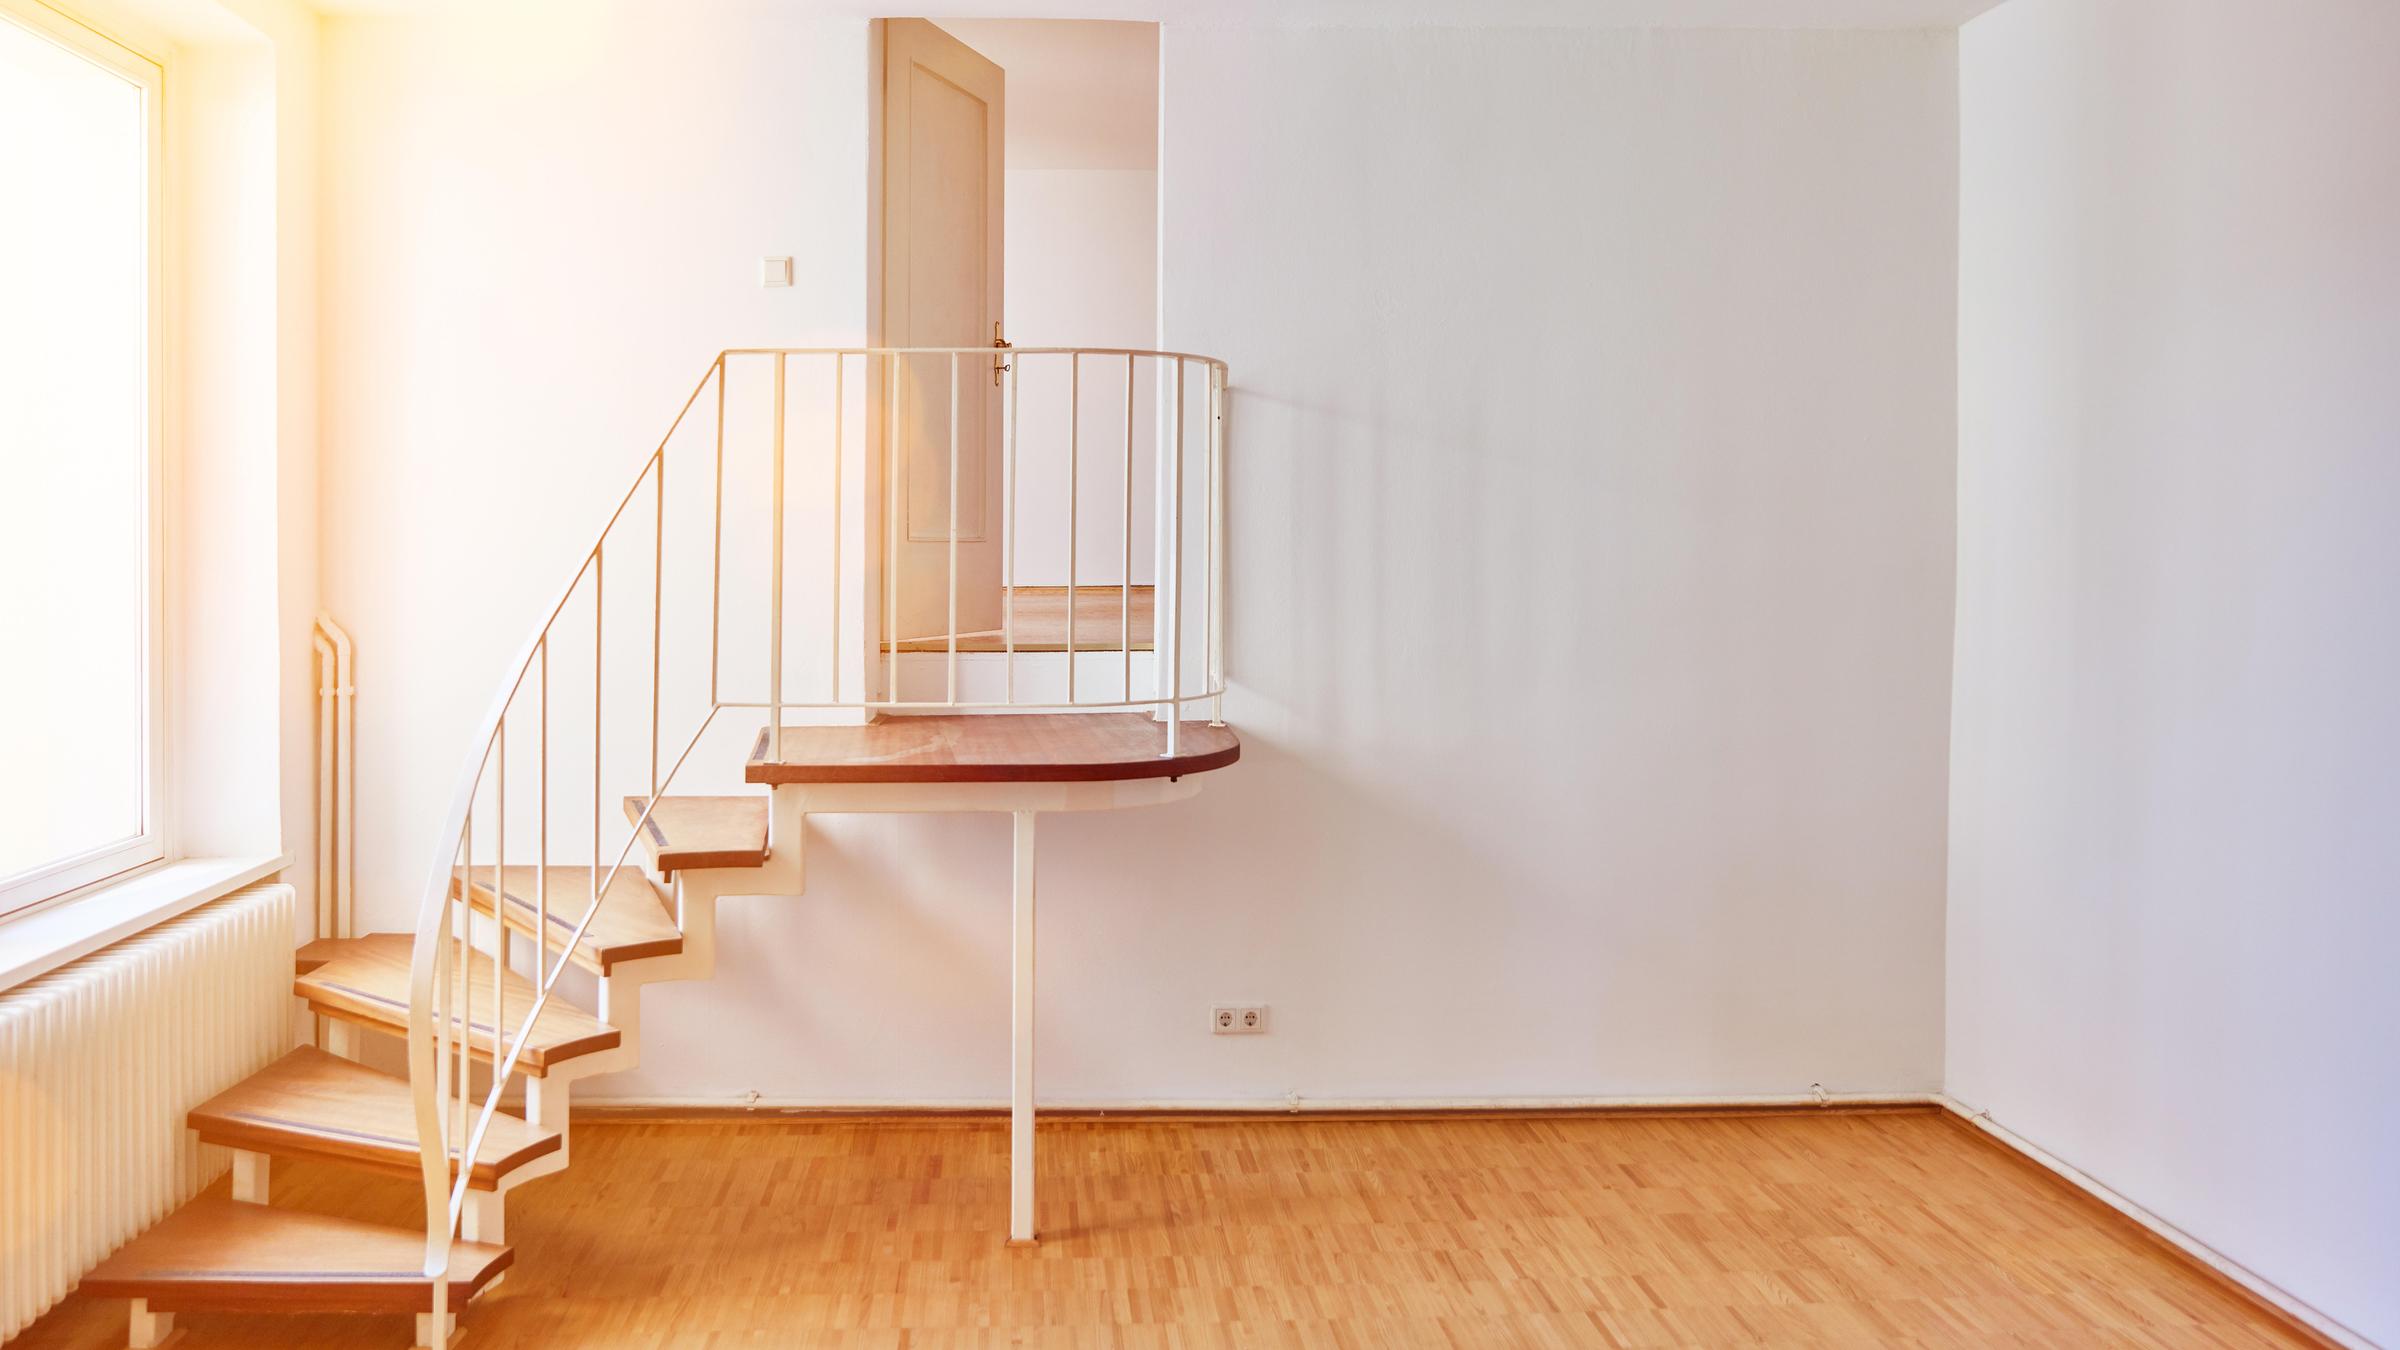 Ein helles Zimmer in einer Altbauwohnung mit Treppe als Durchgangszimme...</p>

                        <a href=